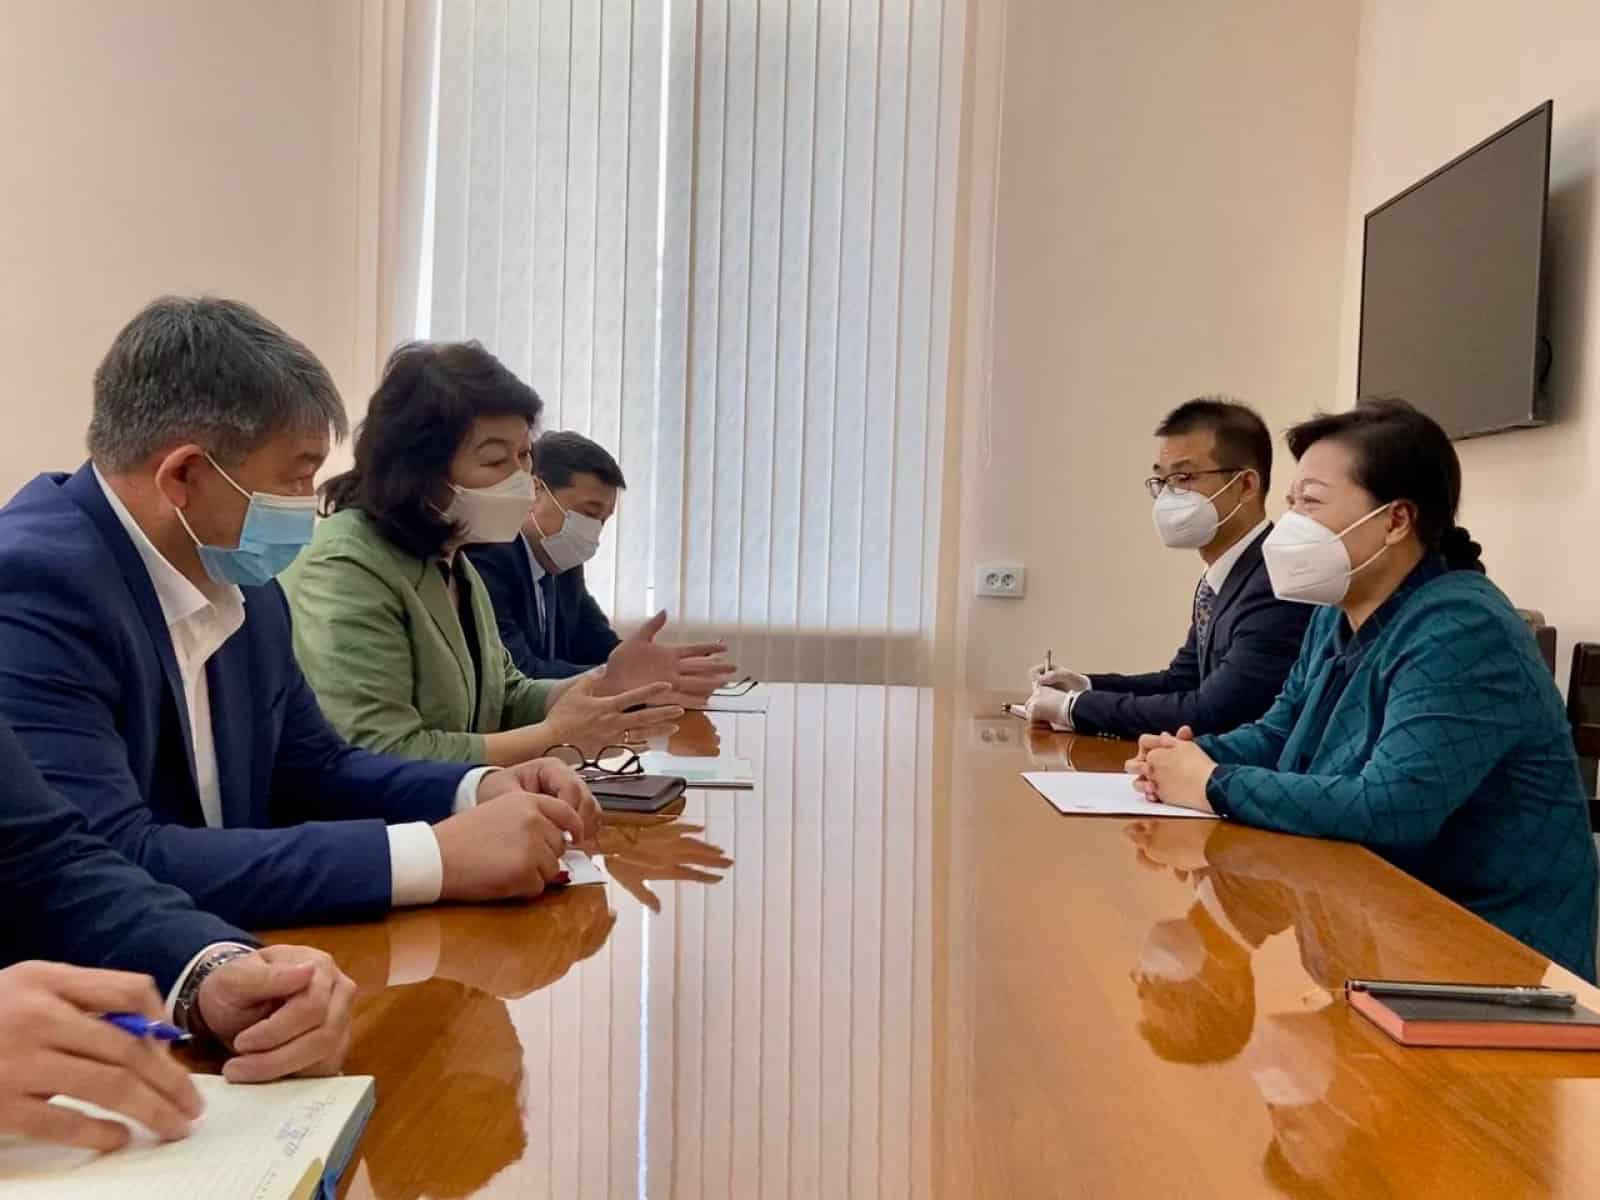 Кыргызстан получит от Китая гумпомощь в виде 540 тысяч доз вакцины Sinopharm